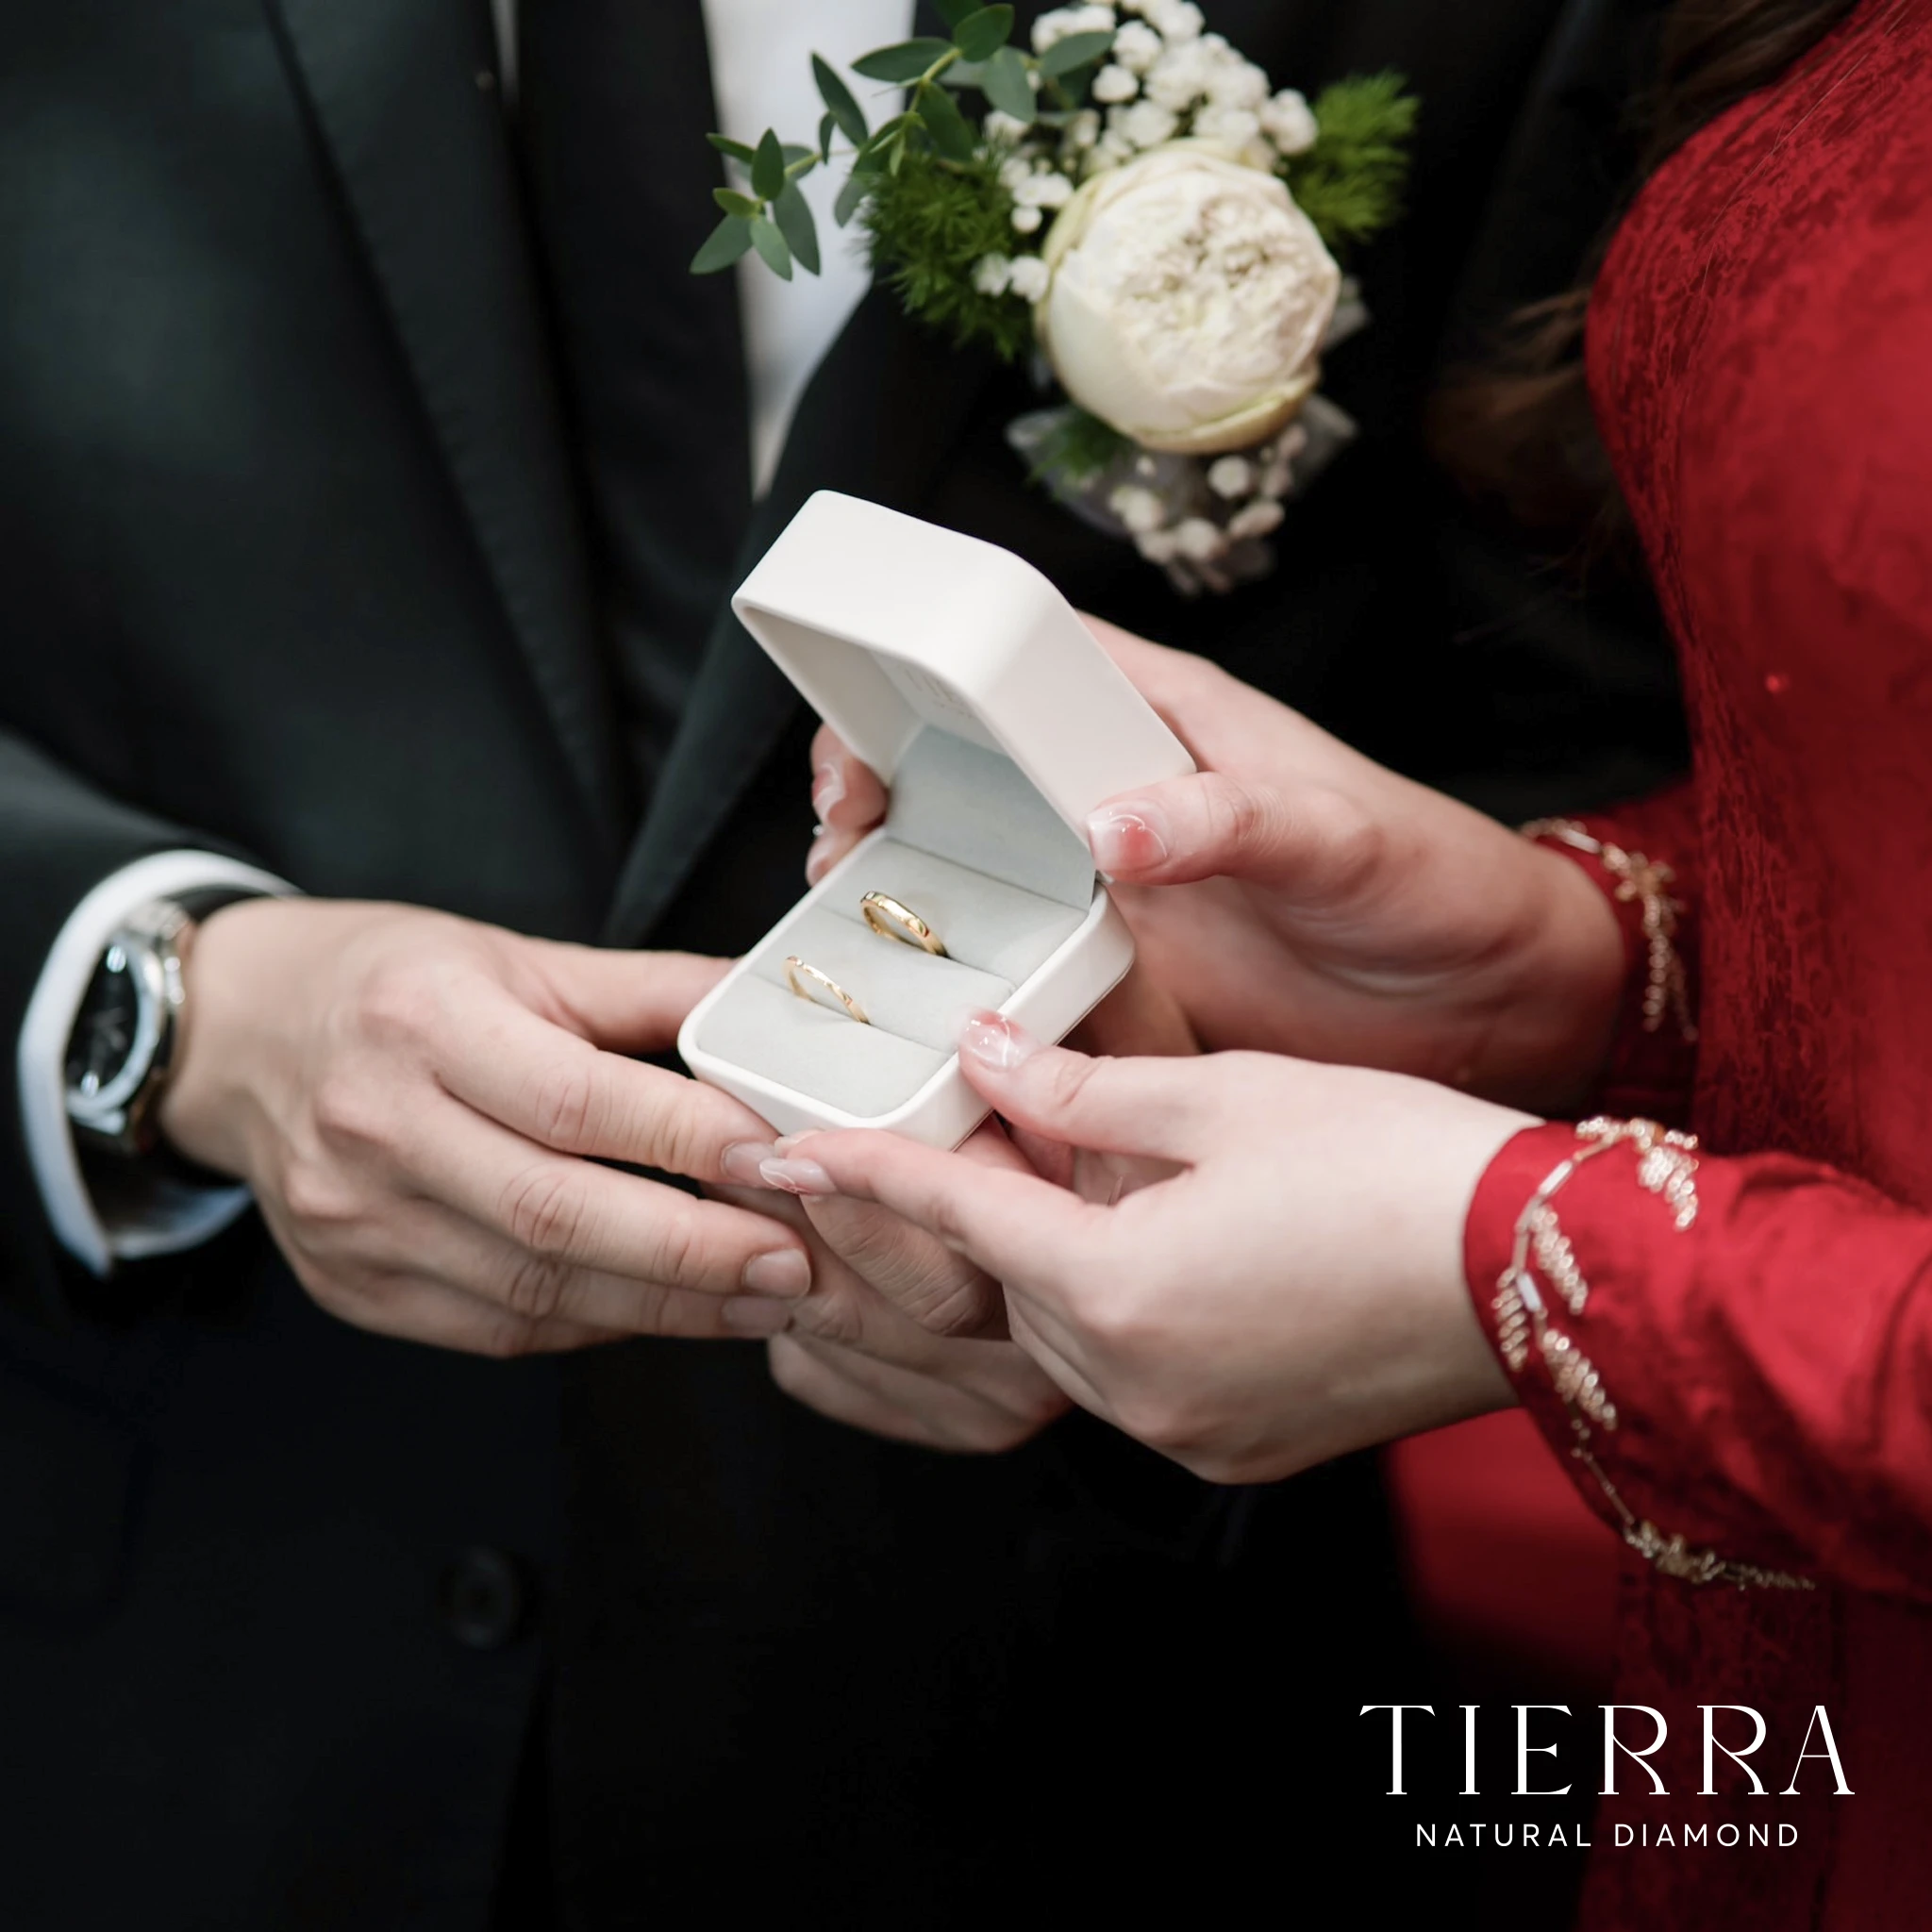 Lựa chọn cặp nhẫn cưới hoàn hảo tại Tierra Diamond